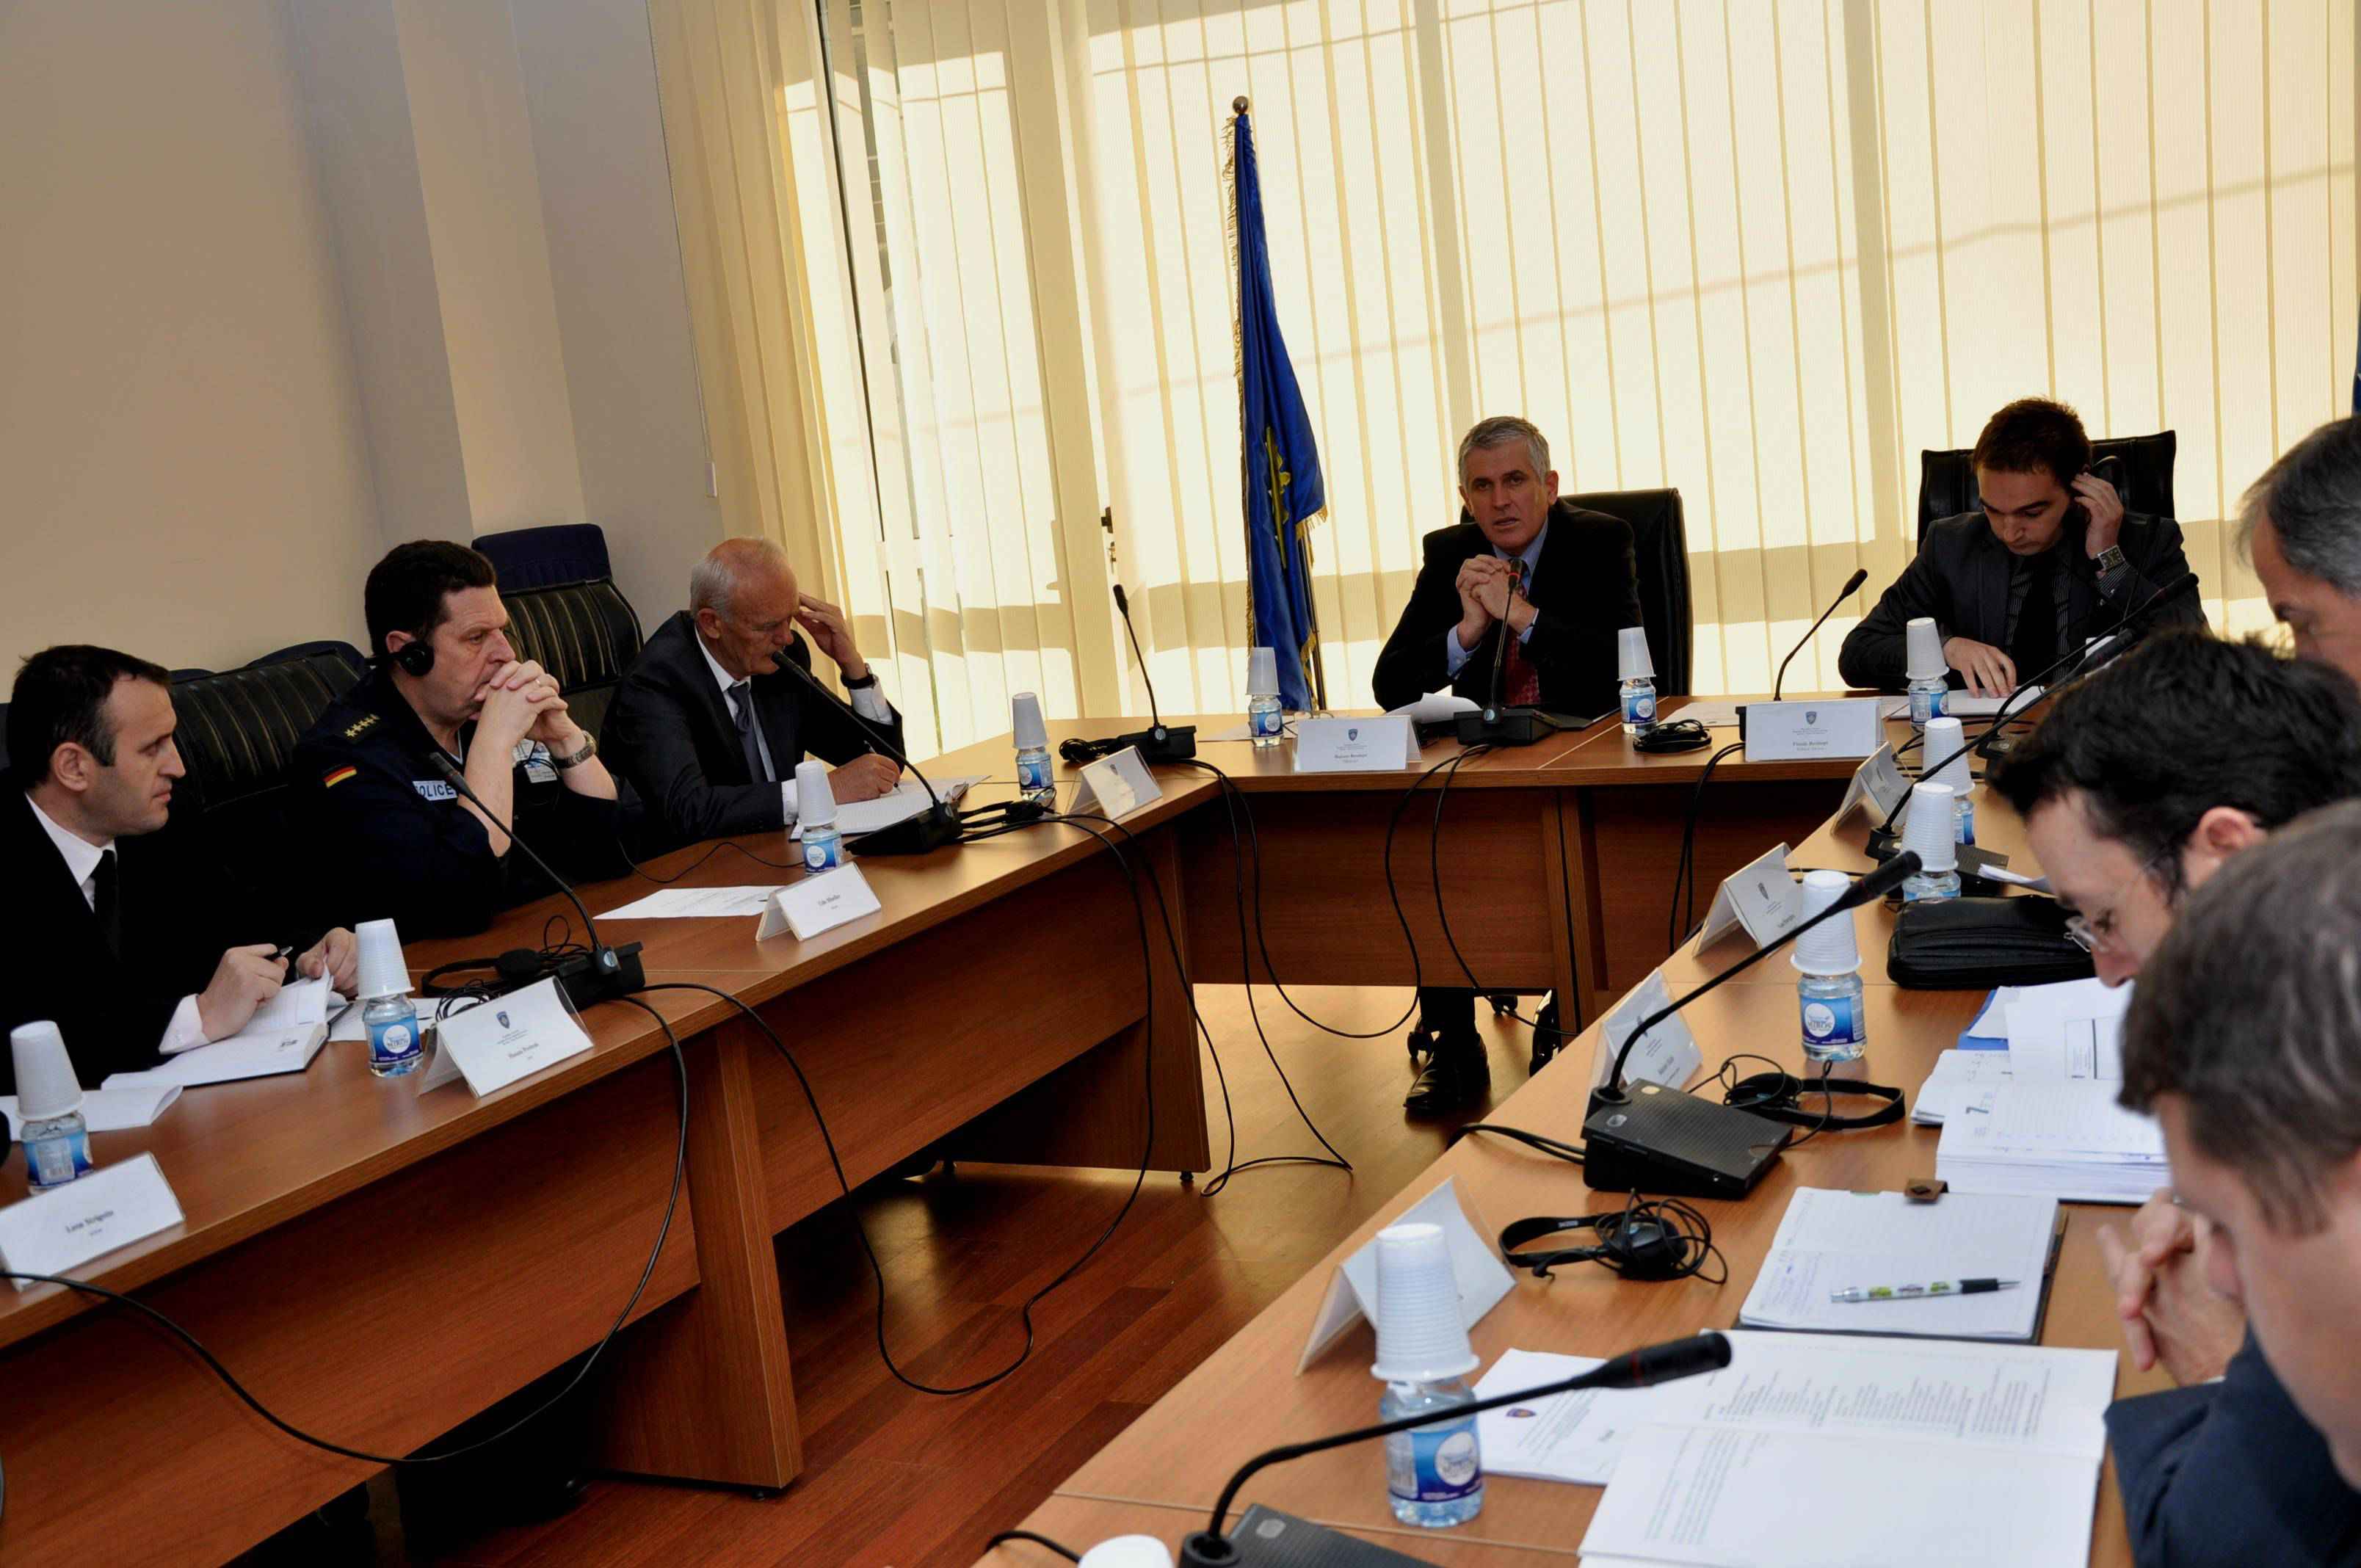 Implementimi i strategjisë kundër krimit prioritet për Kosovën